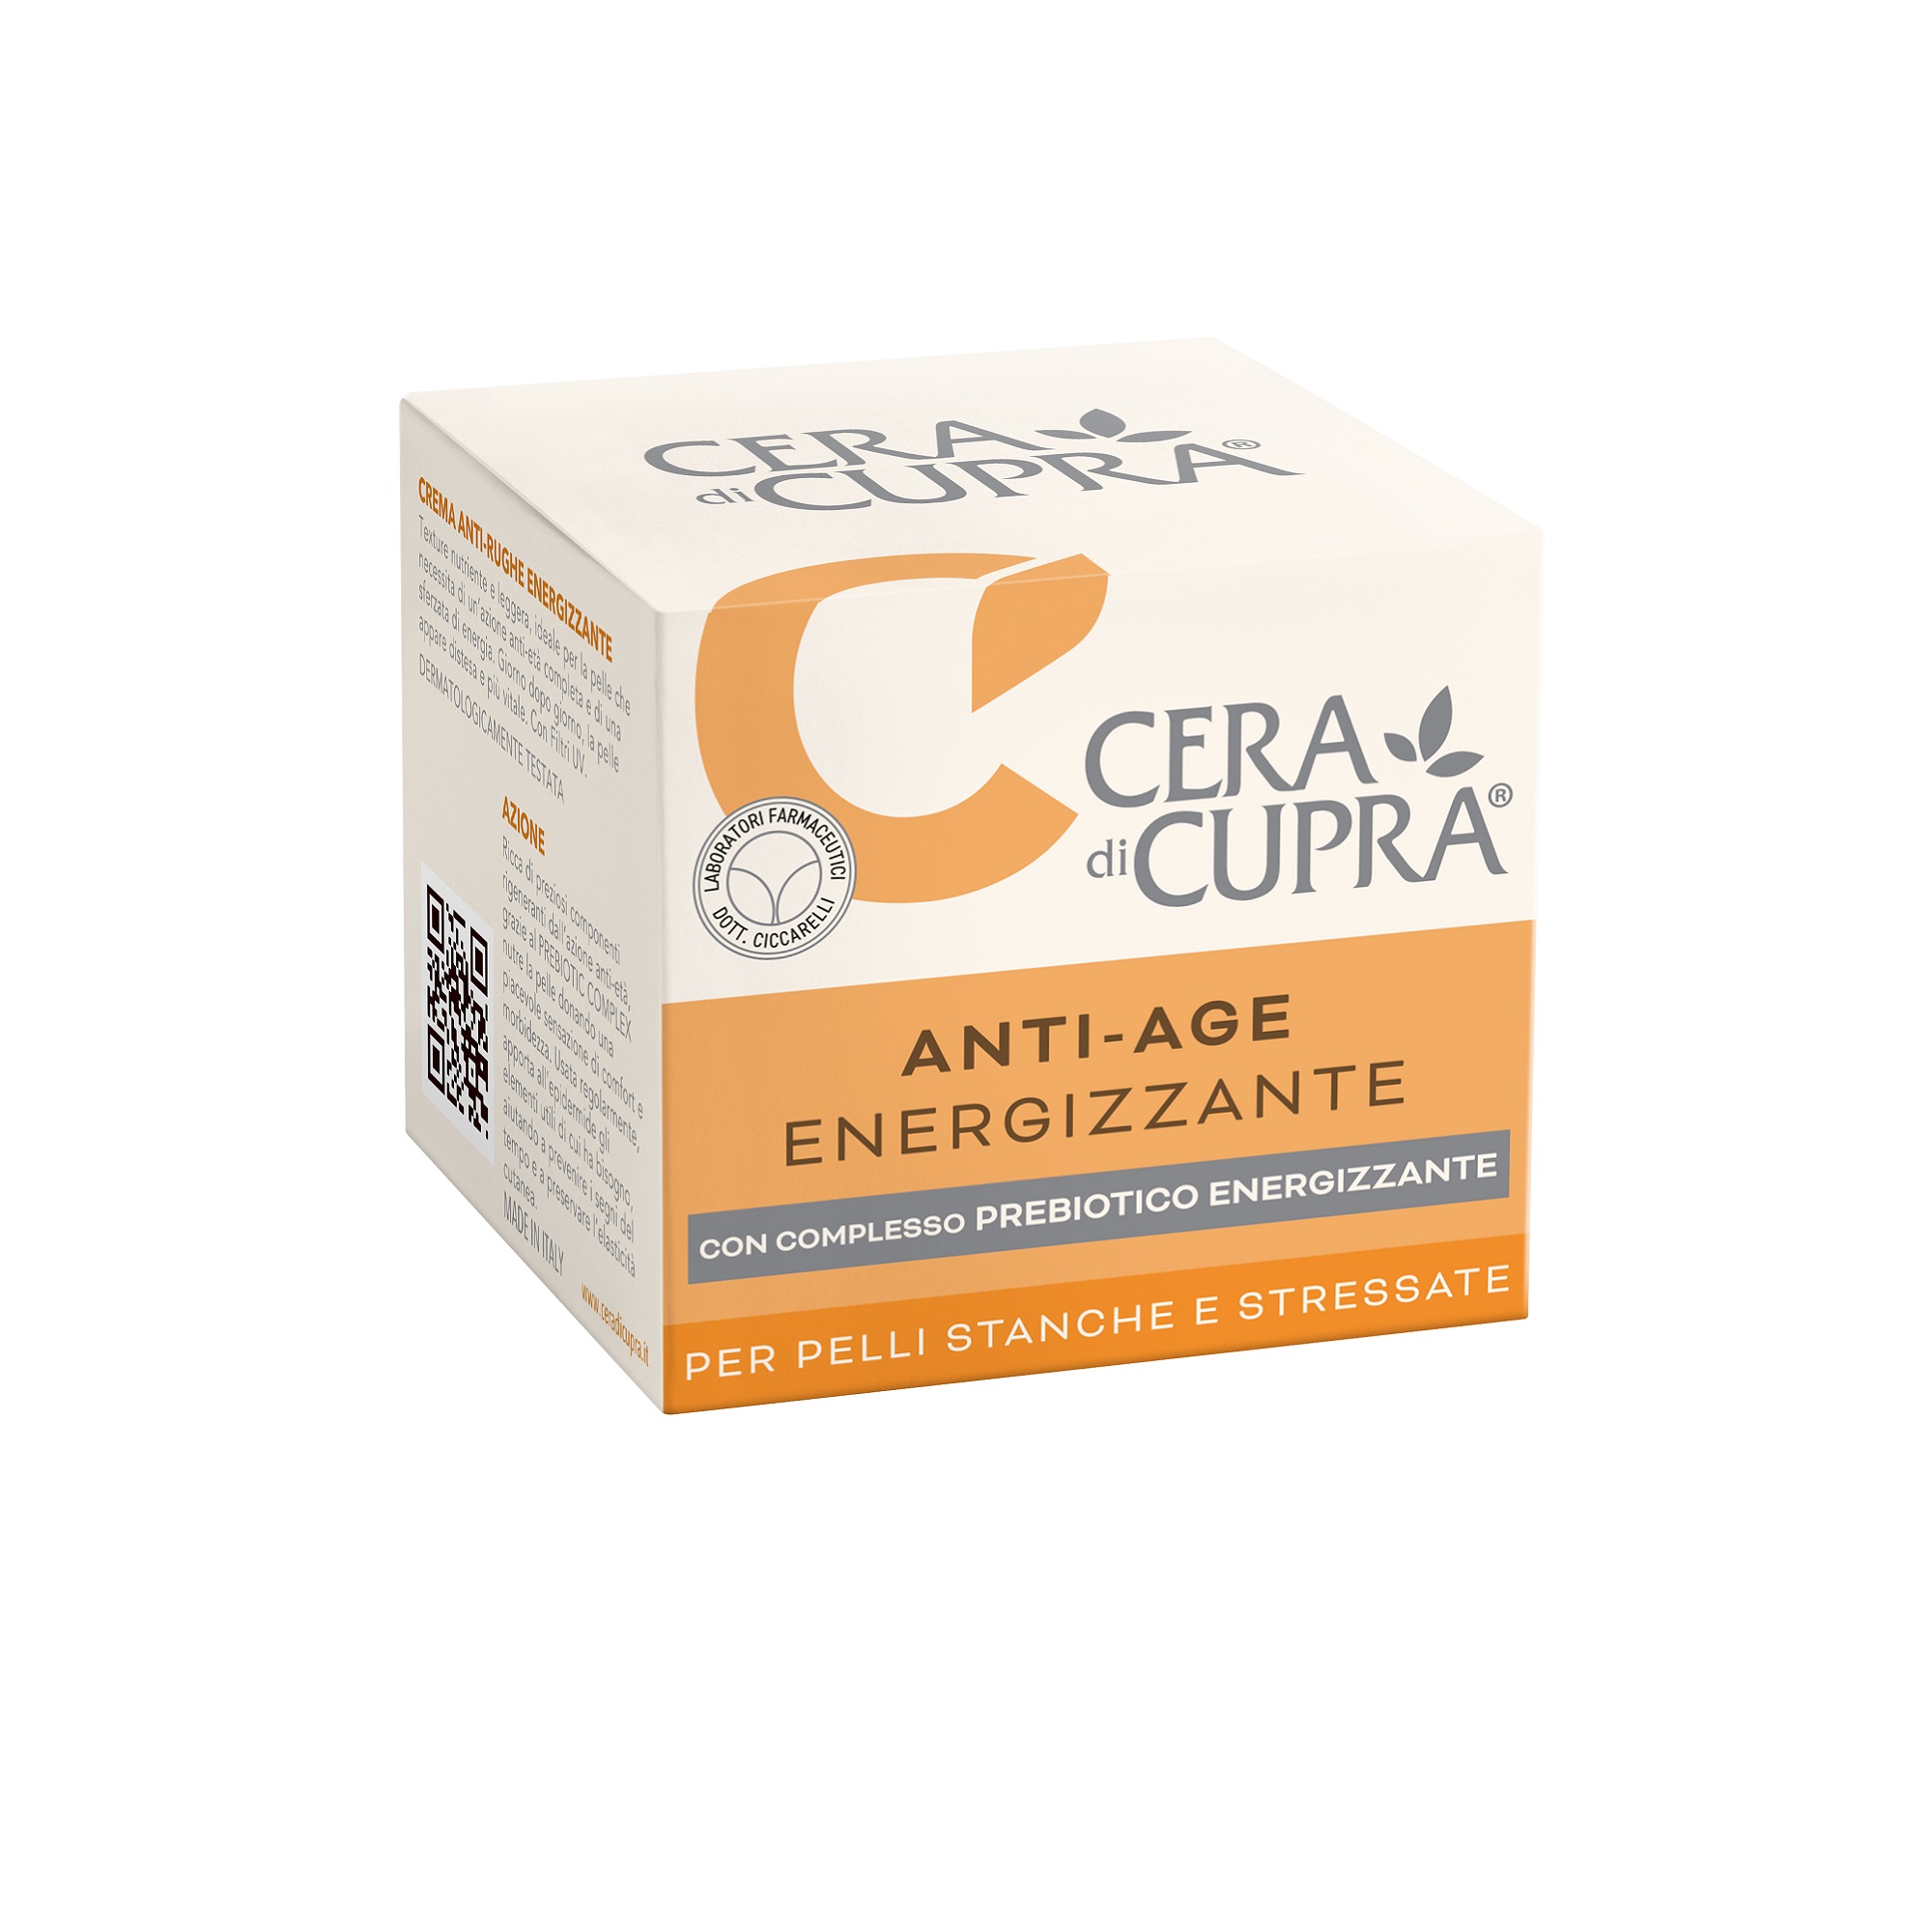 Крем для лица Cera di Cupra ANTI-AGE DAY CREAM 50 мл крем для лица cera di cupra anti age multiaction cream 50 мл